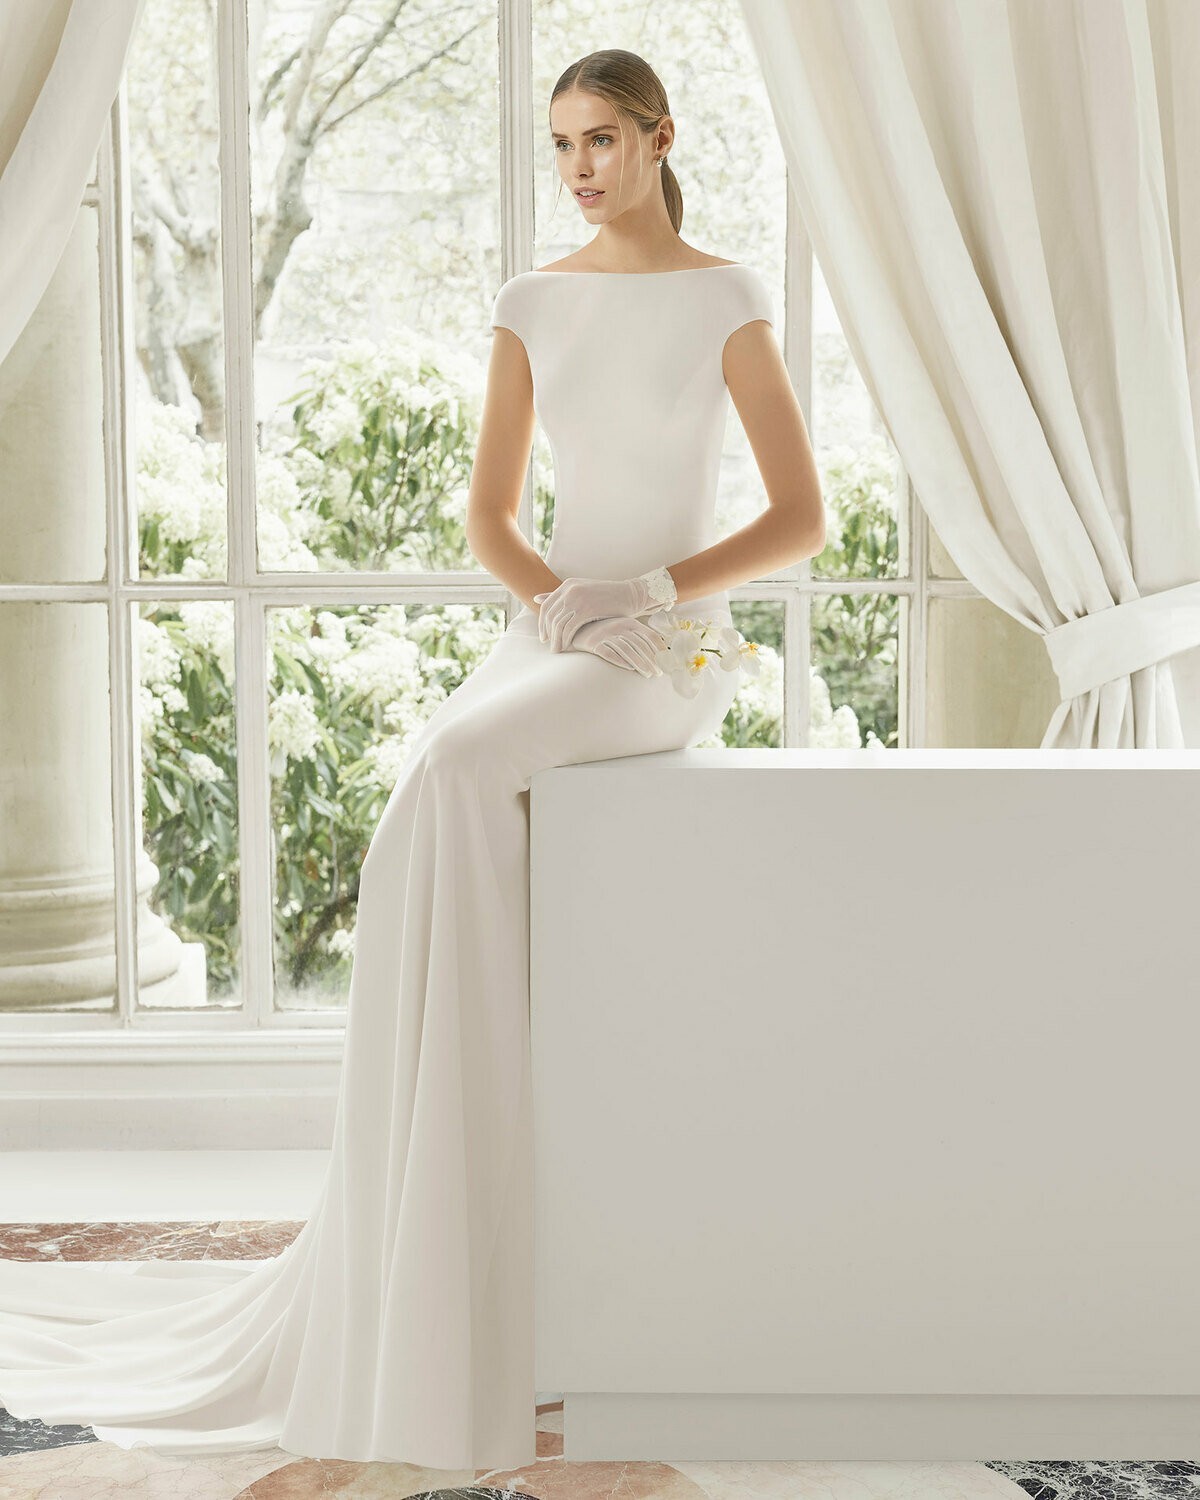 DYLAN - abito da sposa collezione 2020 - Rosa Clarà Couture